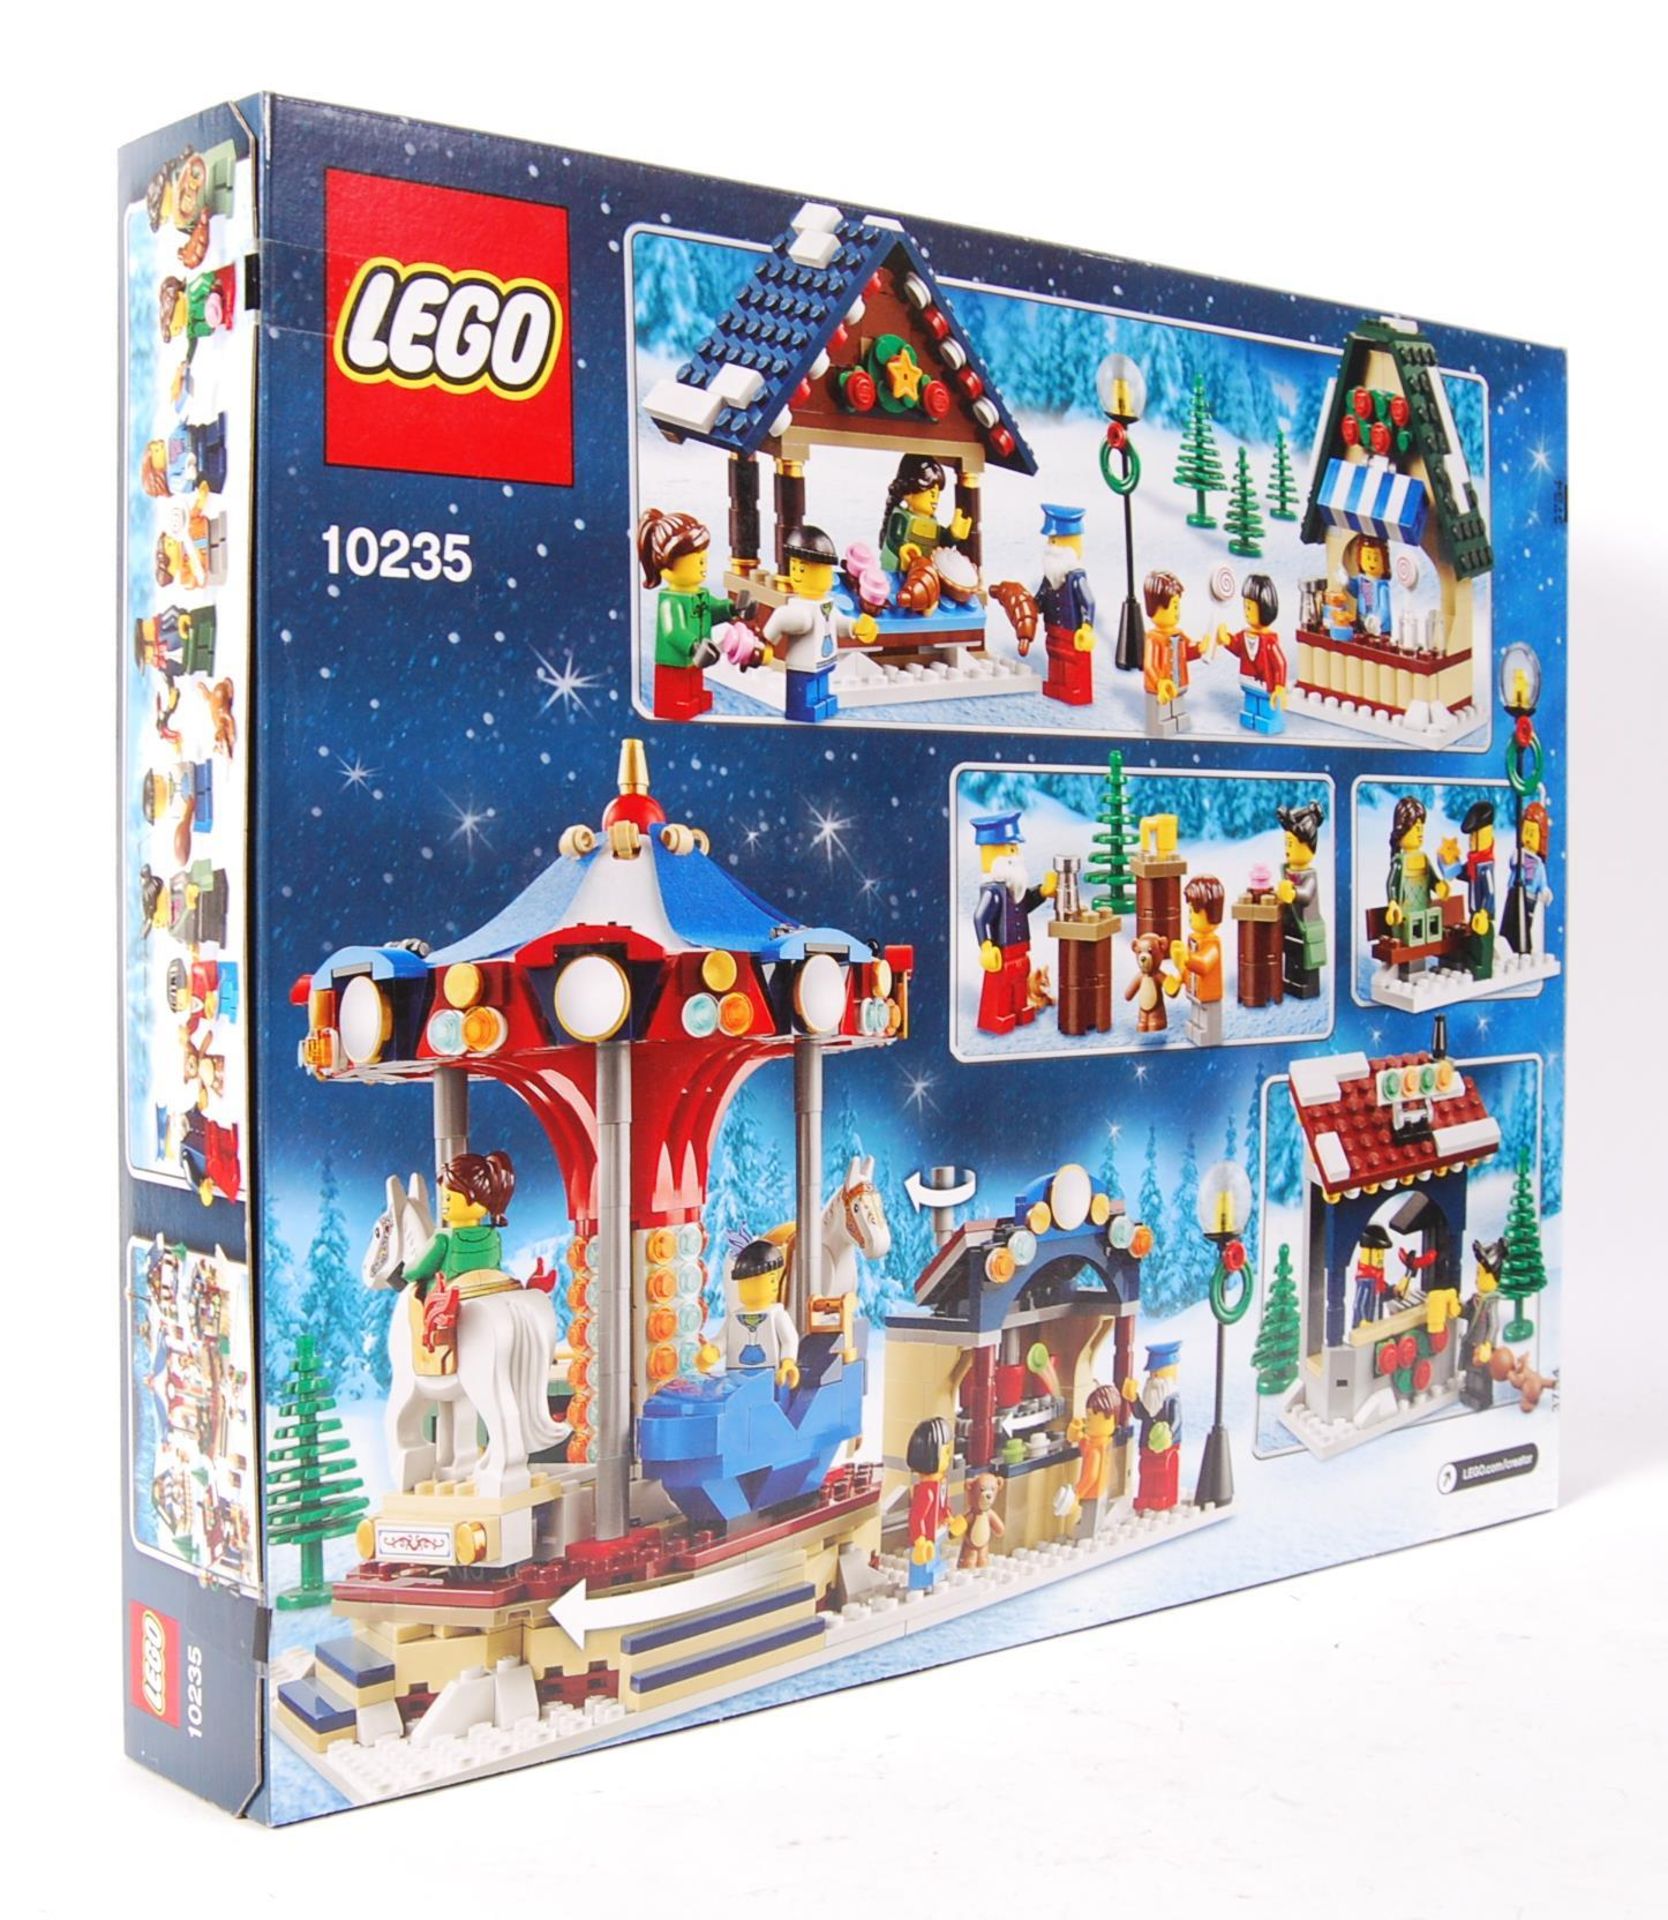 LEGO CREATOR 10235 ' WINTER VILLAGE MARKET ' BOXED SET - Bild 2 aus 3